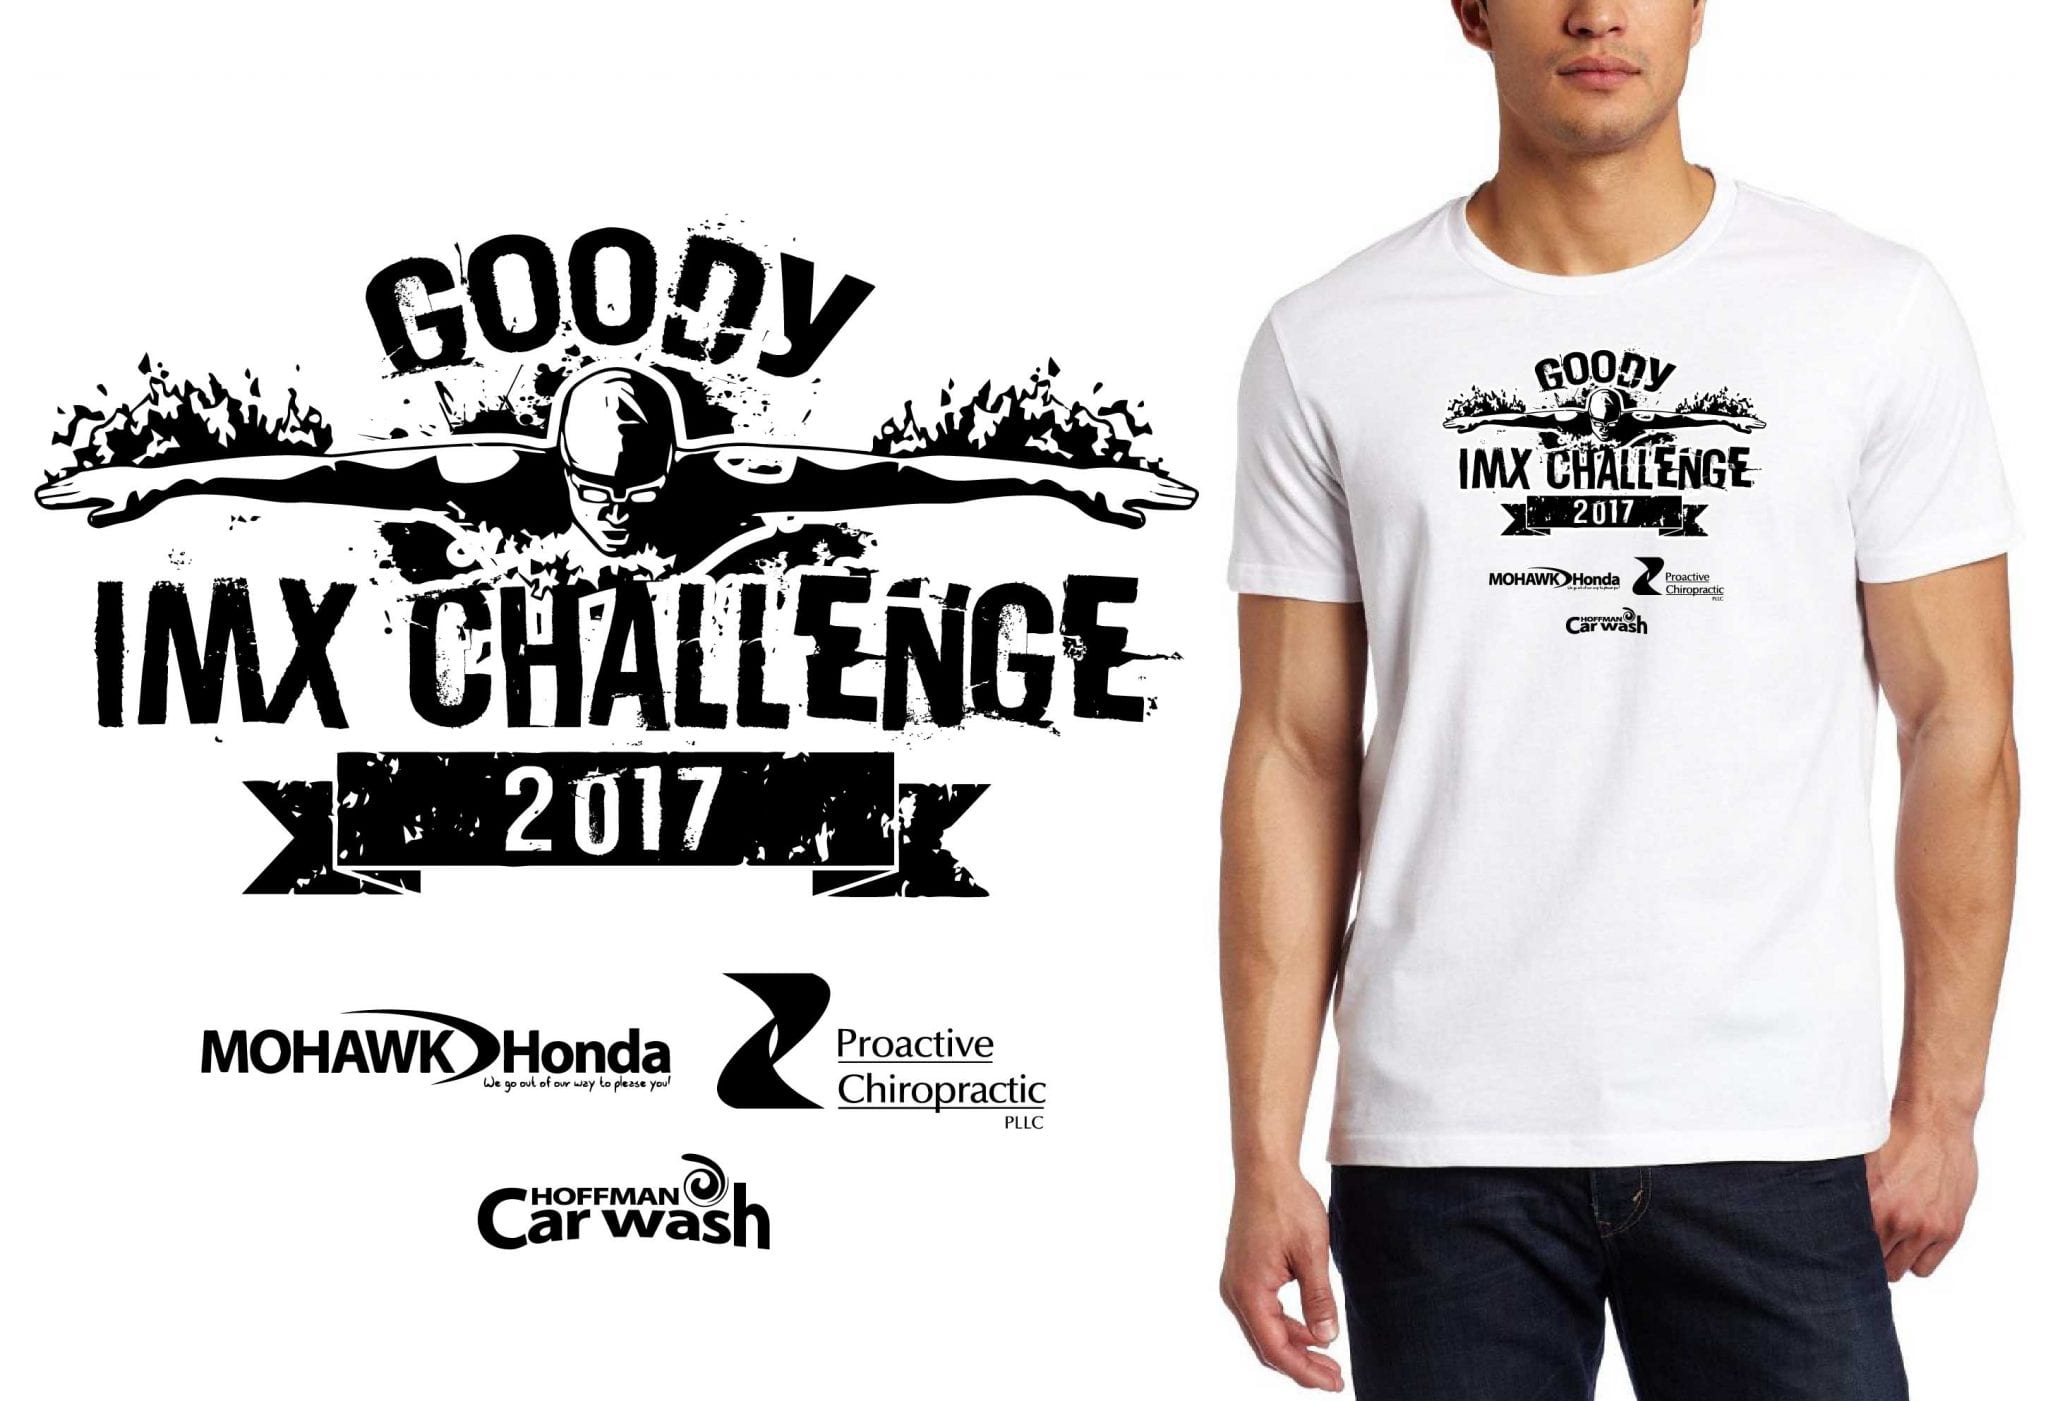 2017 Chris Goody IMX Challenge vector logo design for swimming t-shirt UrArtStudio